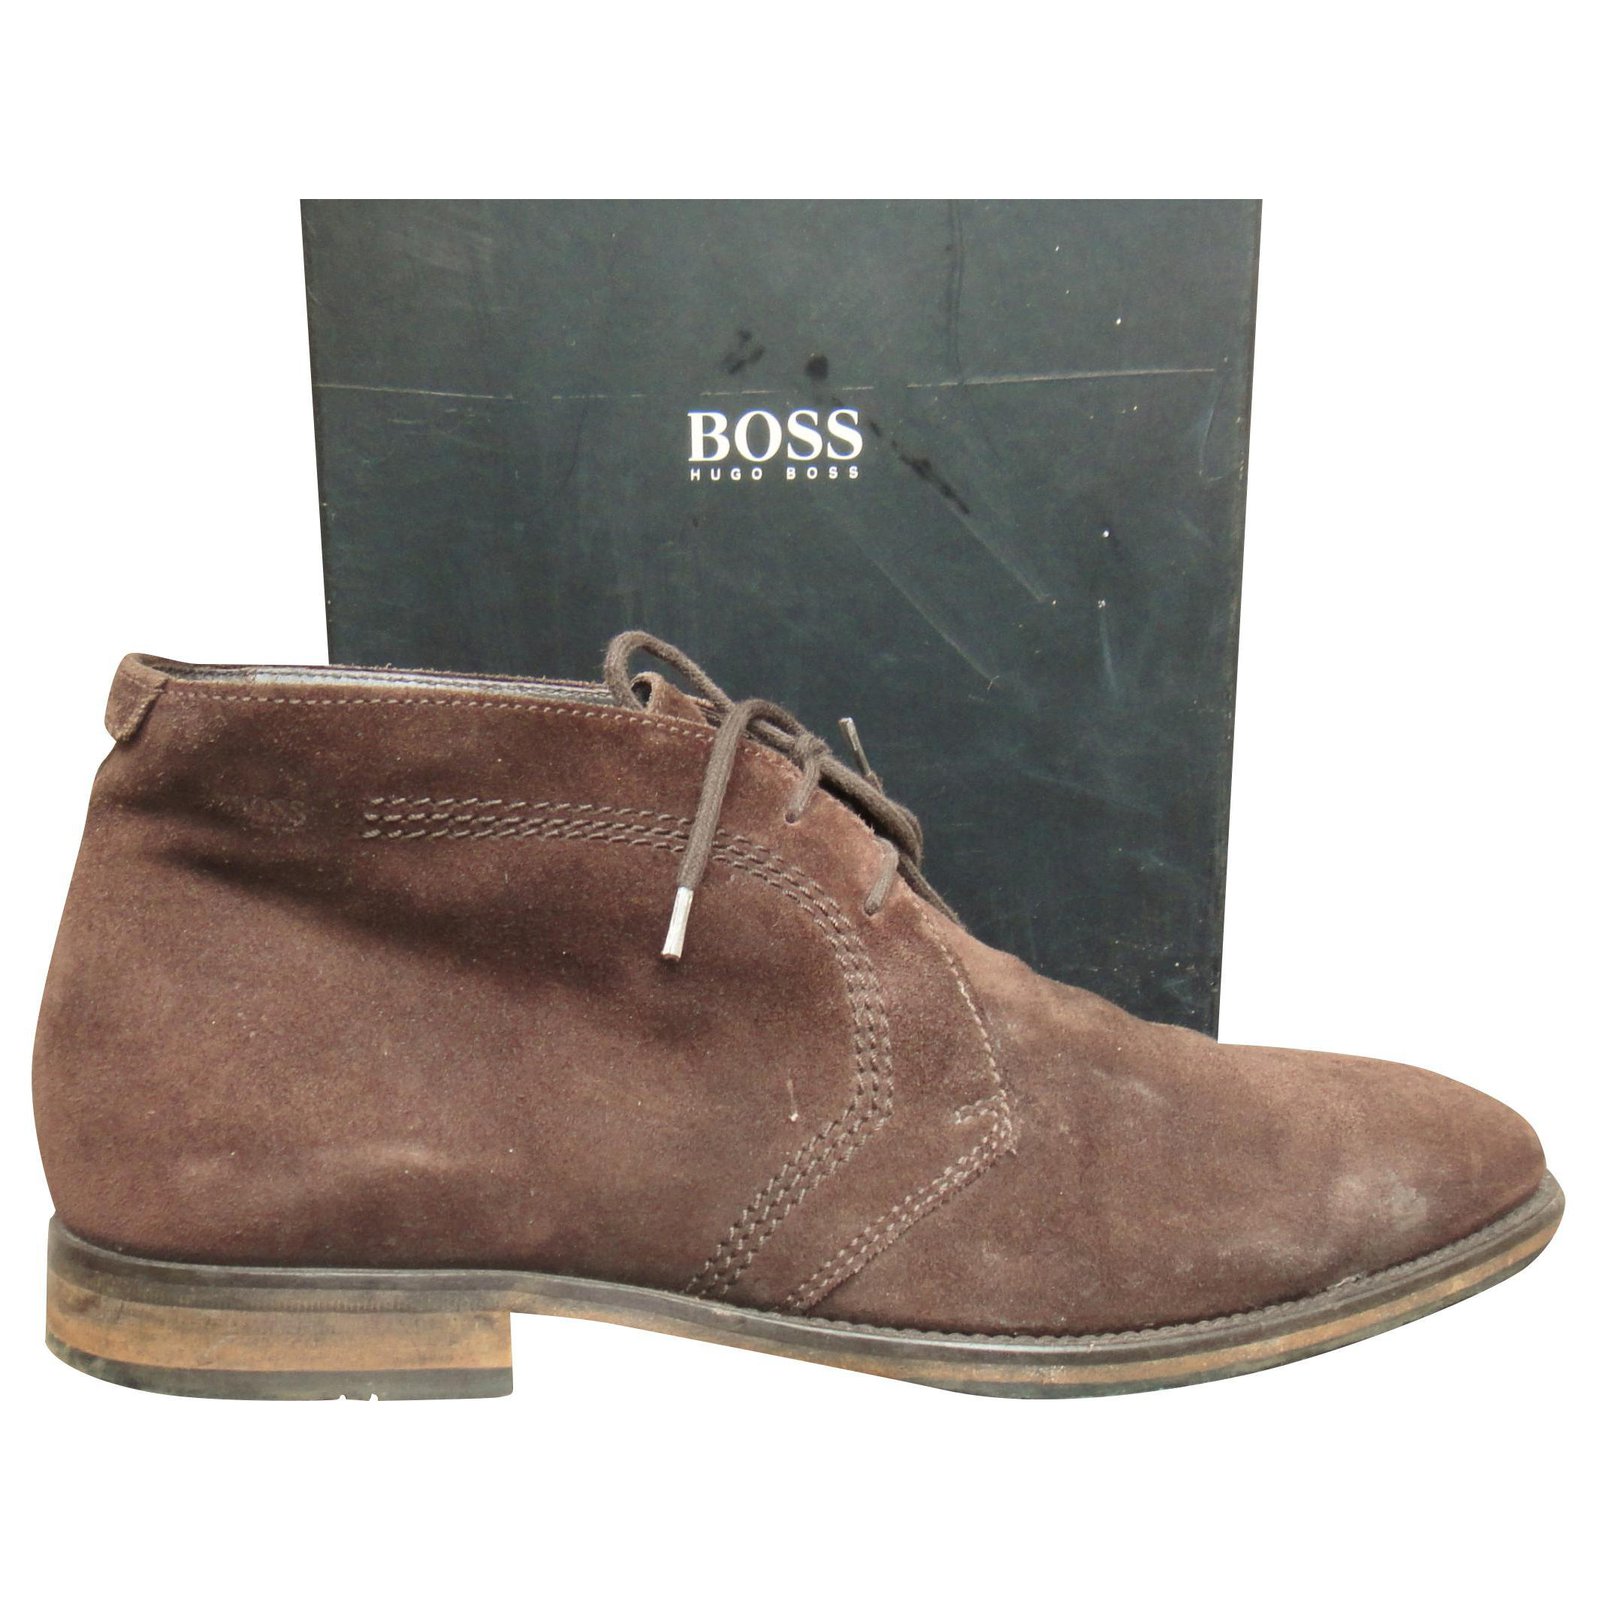 hugo boss desert boots